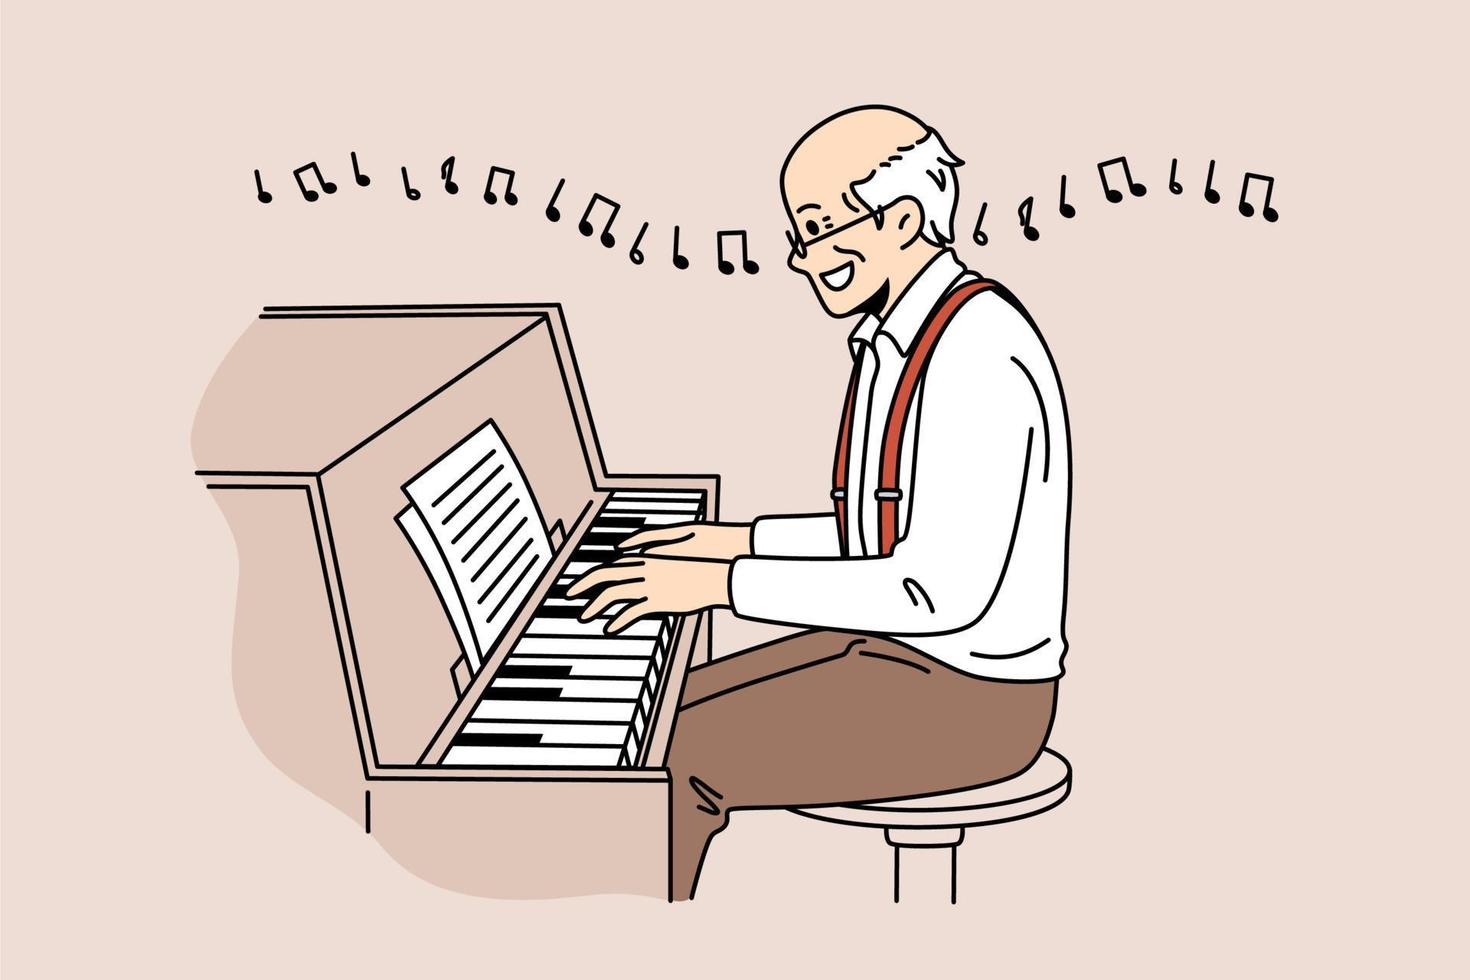 personnes mûres en tant que concept de musiciens. personnage de dessin animé de retraité homme souriant âgé assis lisant des notes jouant du piano en appréciant la musique illustration vectorielle vecteur